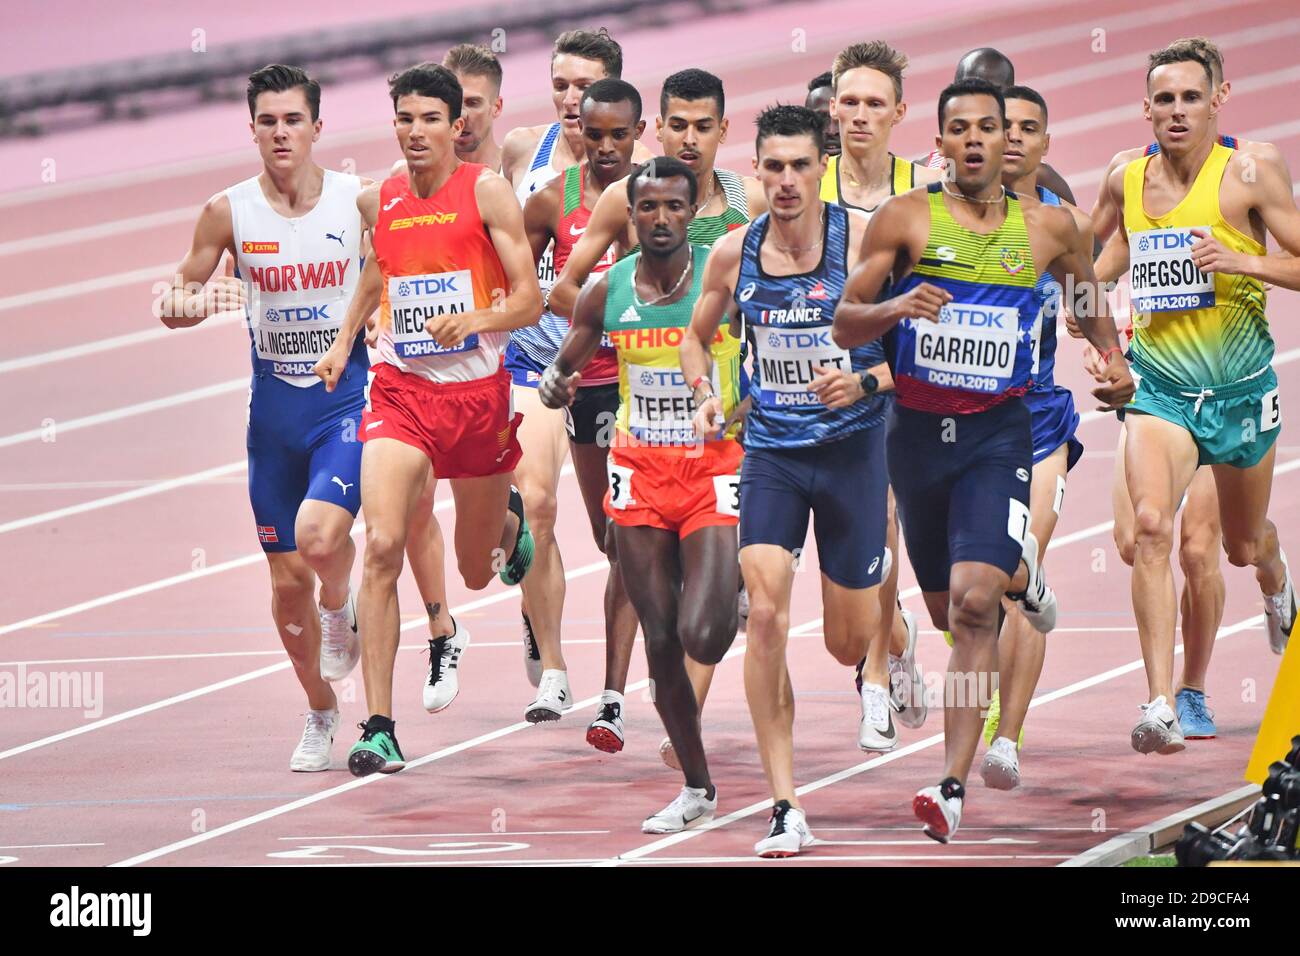 Lucirio Garrido, Alexis Miellet, Abraham Kipchircher Rotich, Samuel Tefera, Adel Mechaal. 1500 mètres. Championnats du monde d'athlétisme de l'IAAF, Doha 2019 Banque D'Images